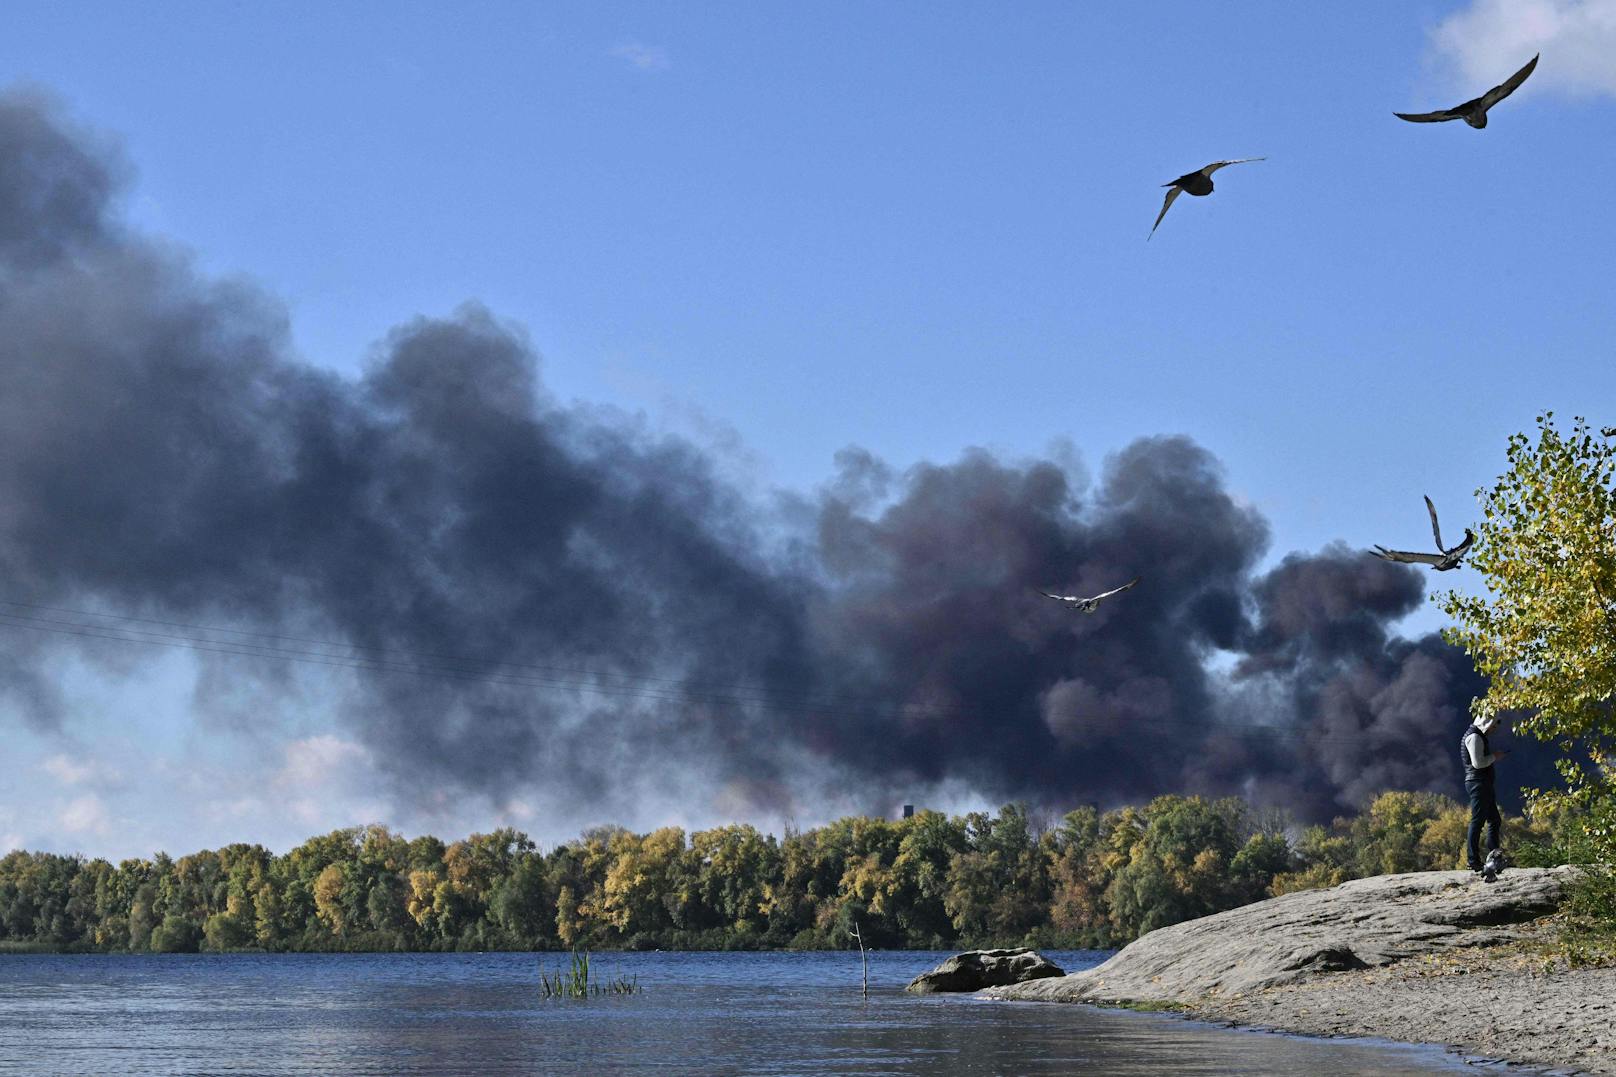 Eine Rauchwolke über dem Dnepro. Dieser Aufnhame waren mehrere Raketeneinschläge in der ukrainischen Hauptstadt Kiew vorausgegangen.